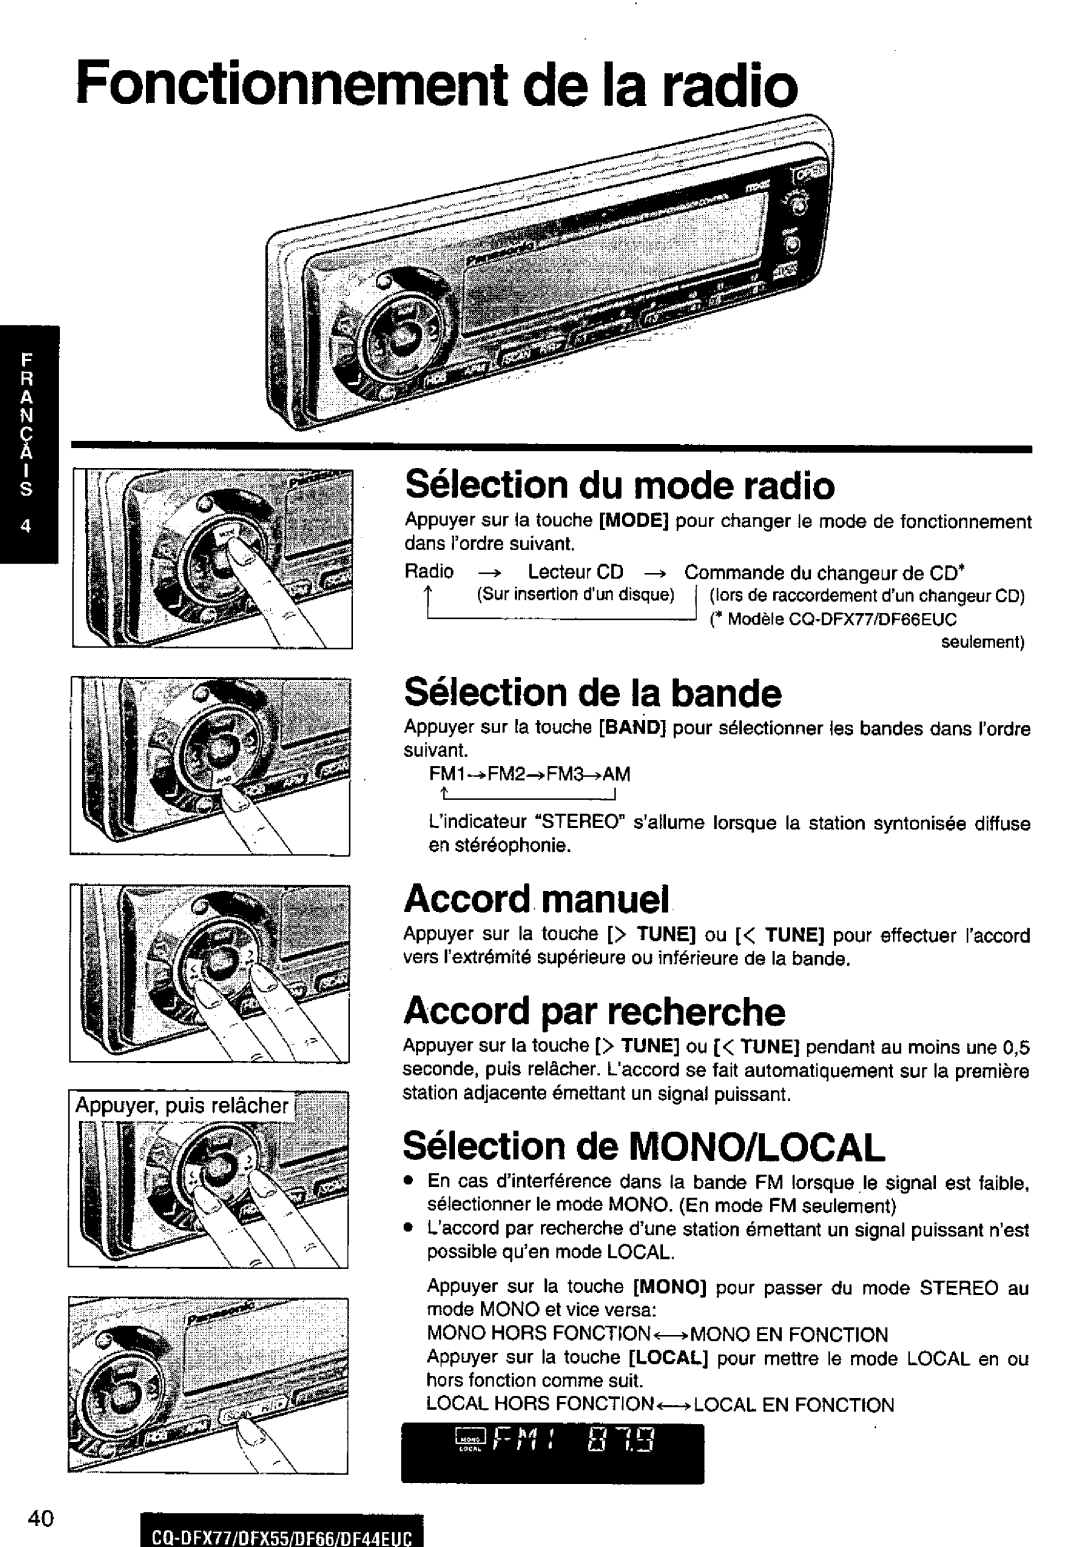 Panasonic CQ-DFX77, DF66EUC, DF44EUC, CQ-DFX55 manual 